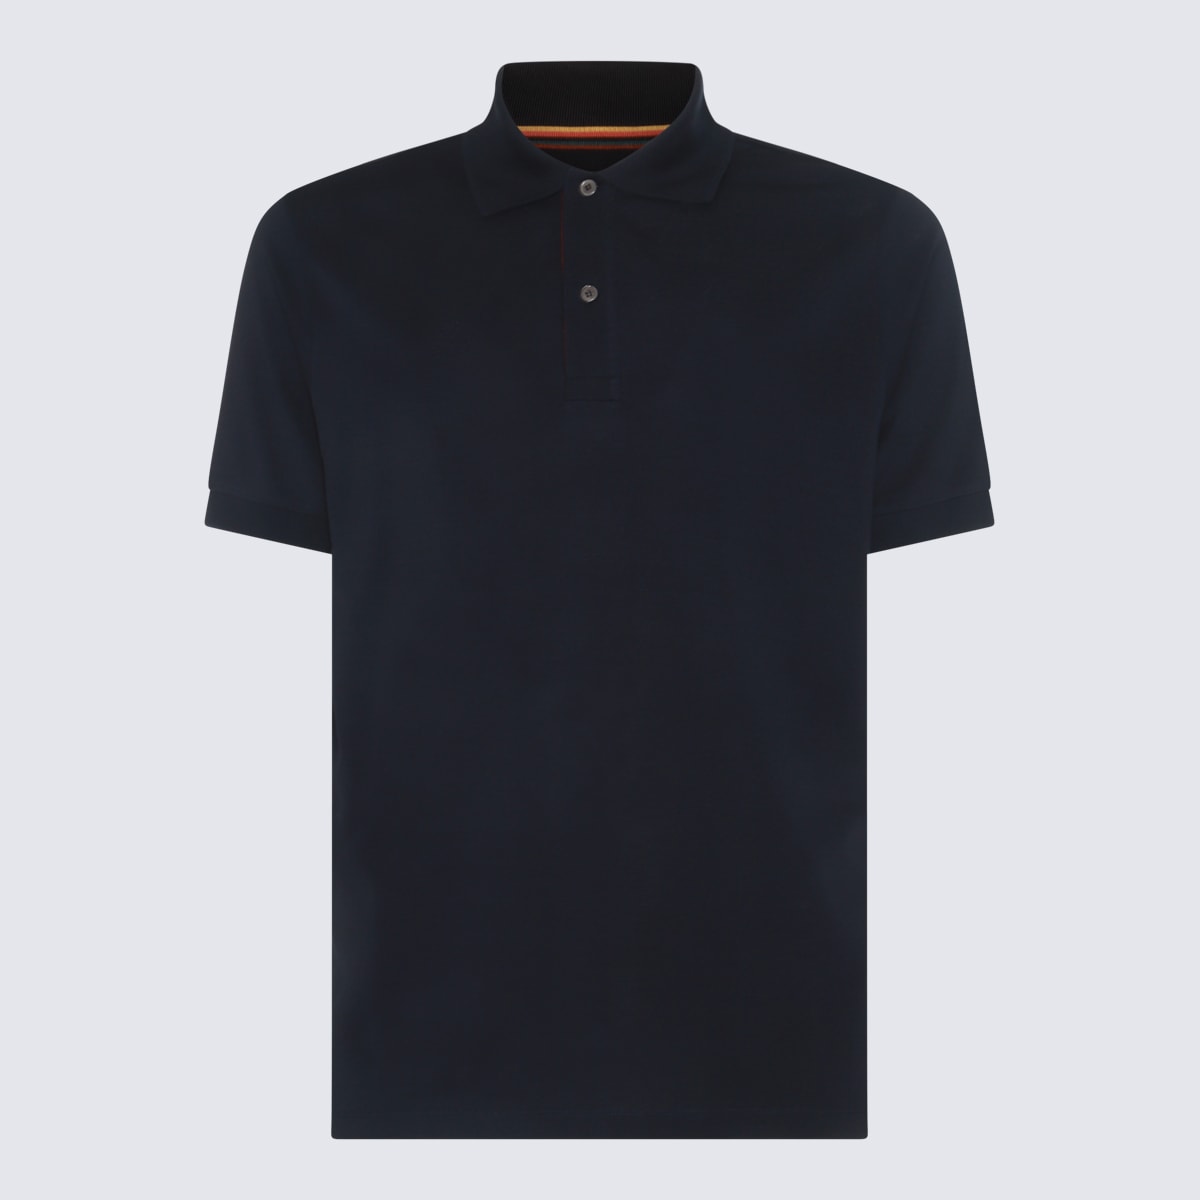 Navy Blue Cotton Polo Shirt Polo Shirt